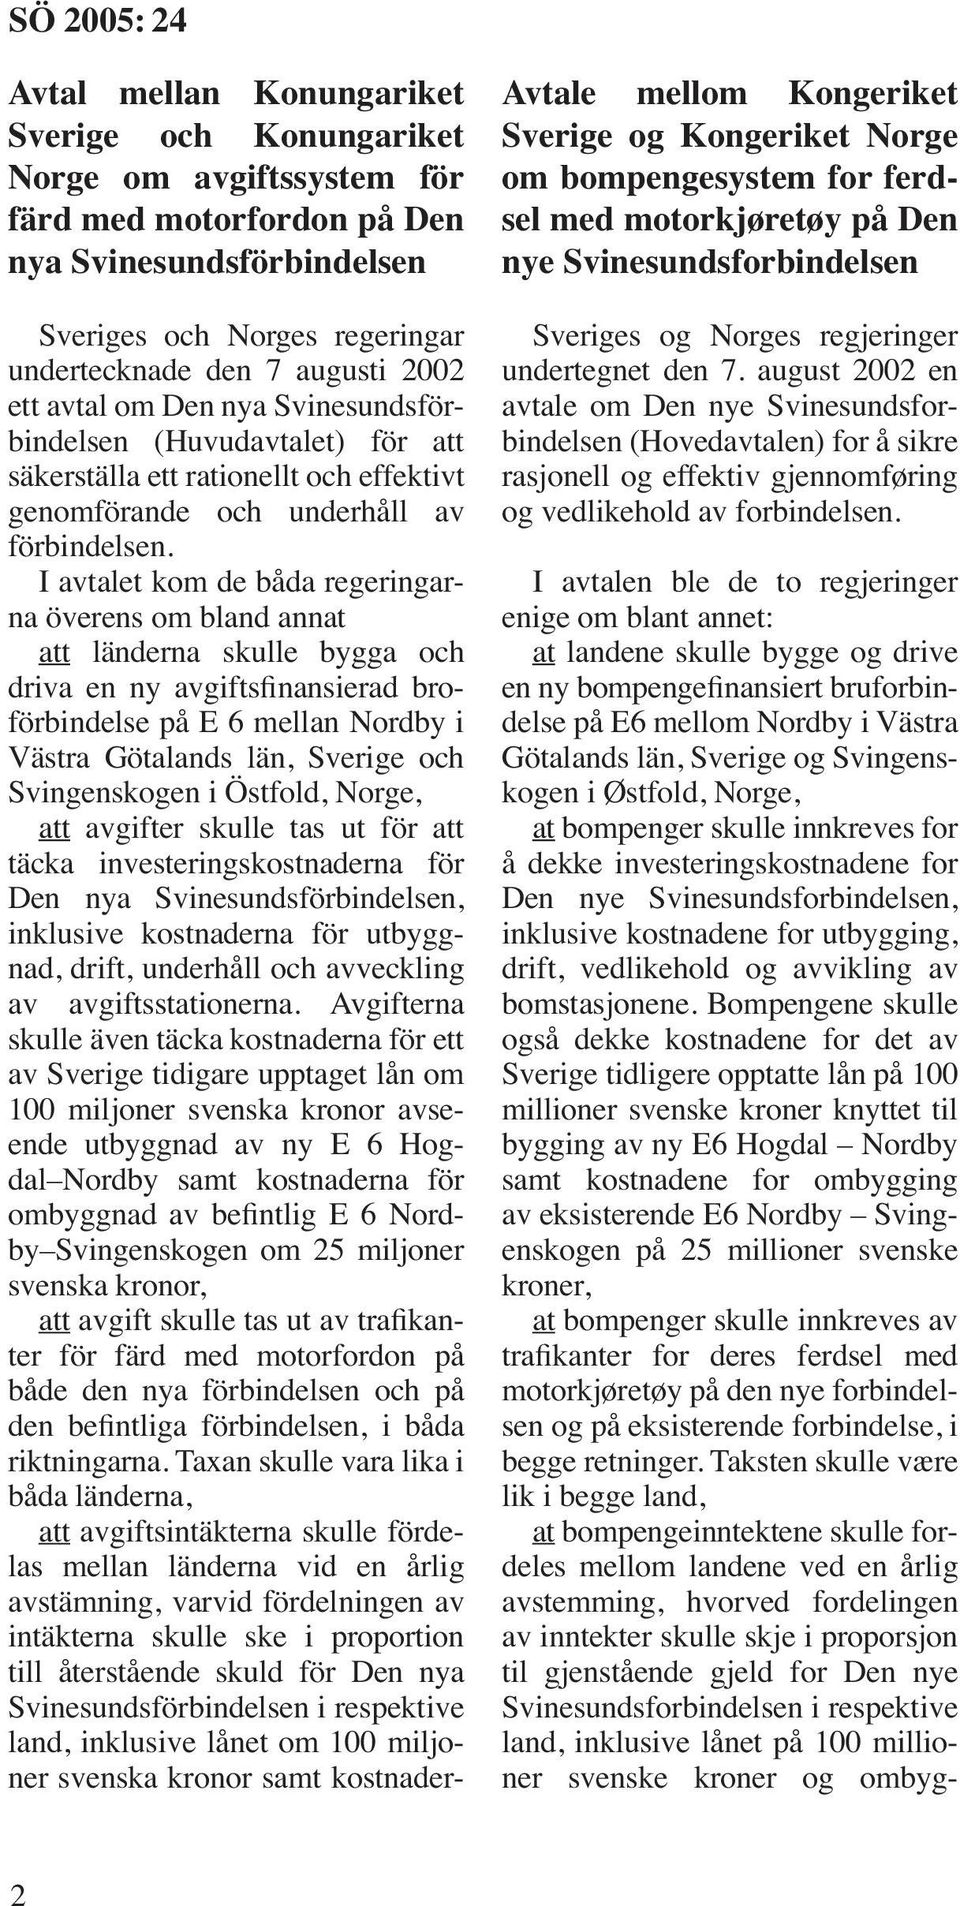 I avtalet kom de båda regeringarna överens om bland annat att länderna skulle bygga och driva en ny avgiftsfinansierad broförbindelse på E 6 mellan Nordby i Västra Götalands län, Sverige och